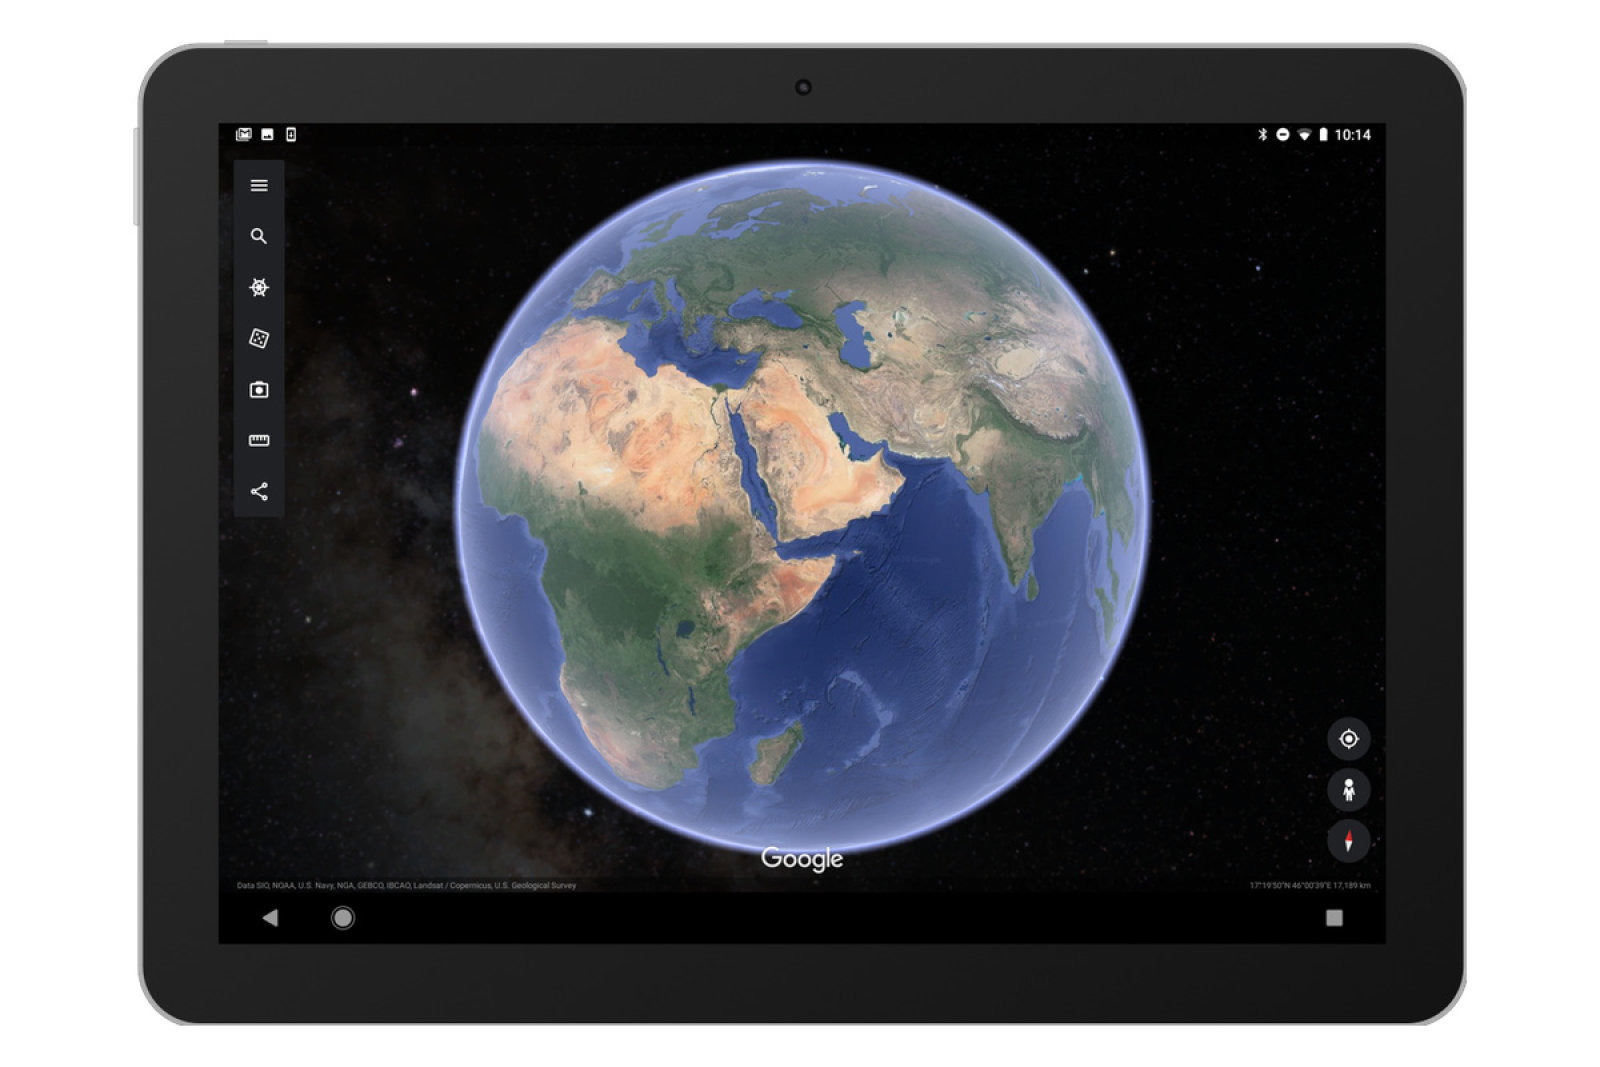 O Google Earth adiciona vistas do espaço sideral nos smartphones